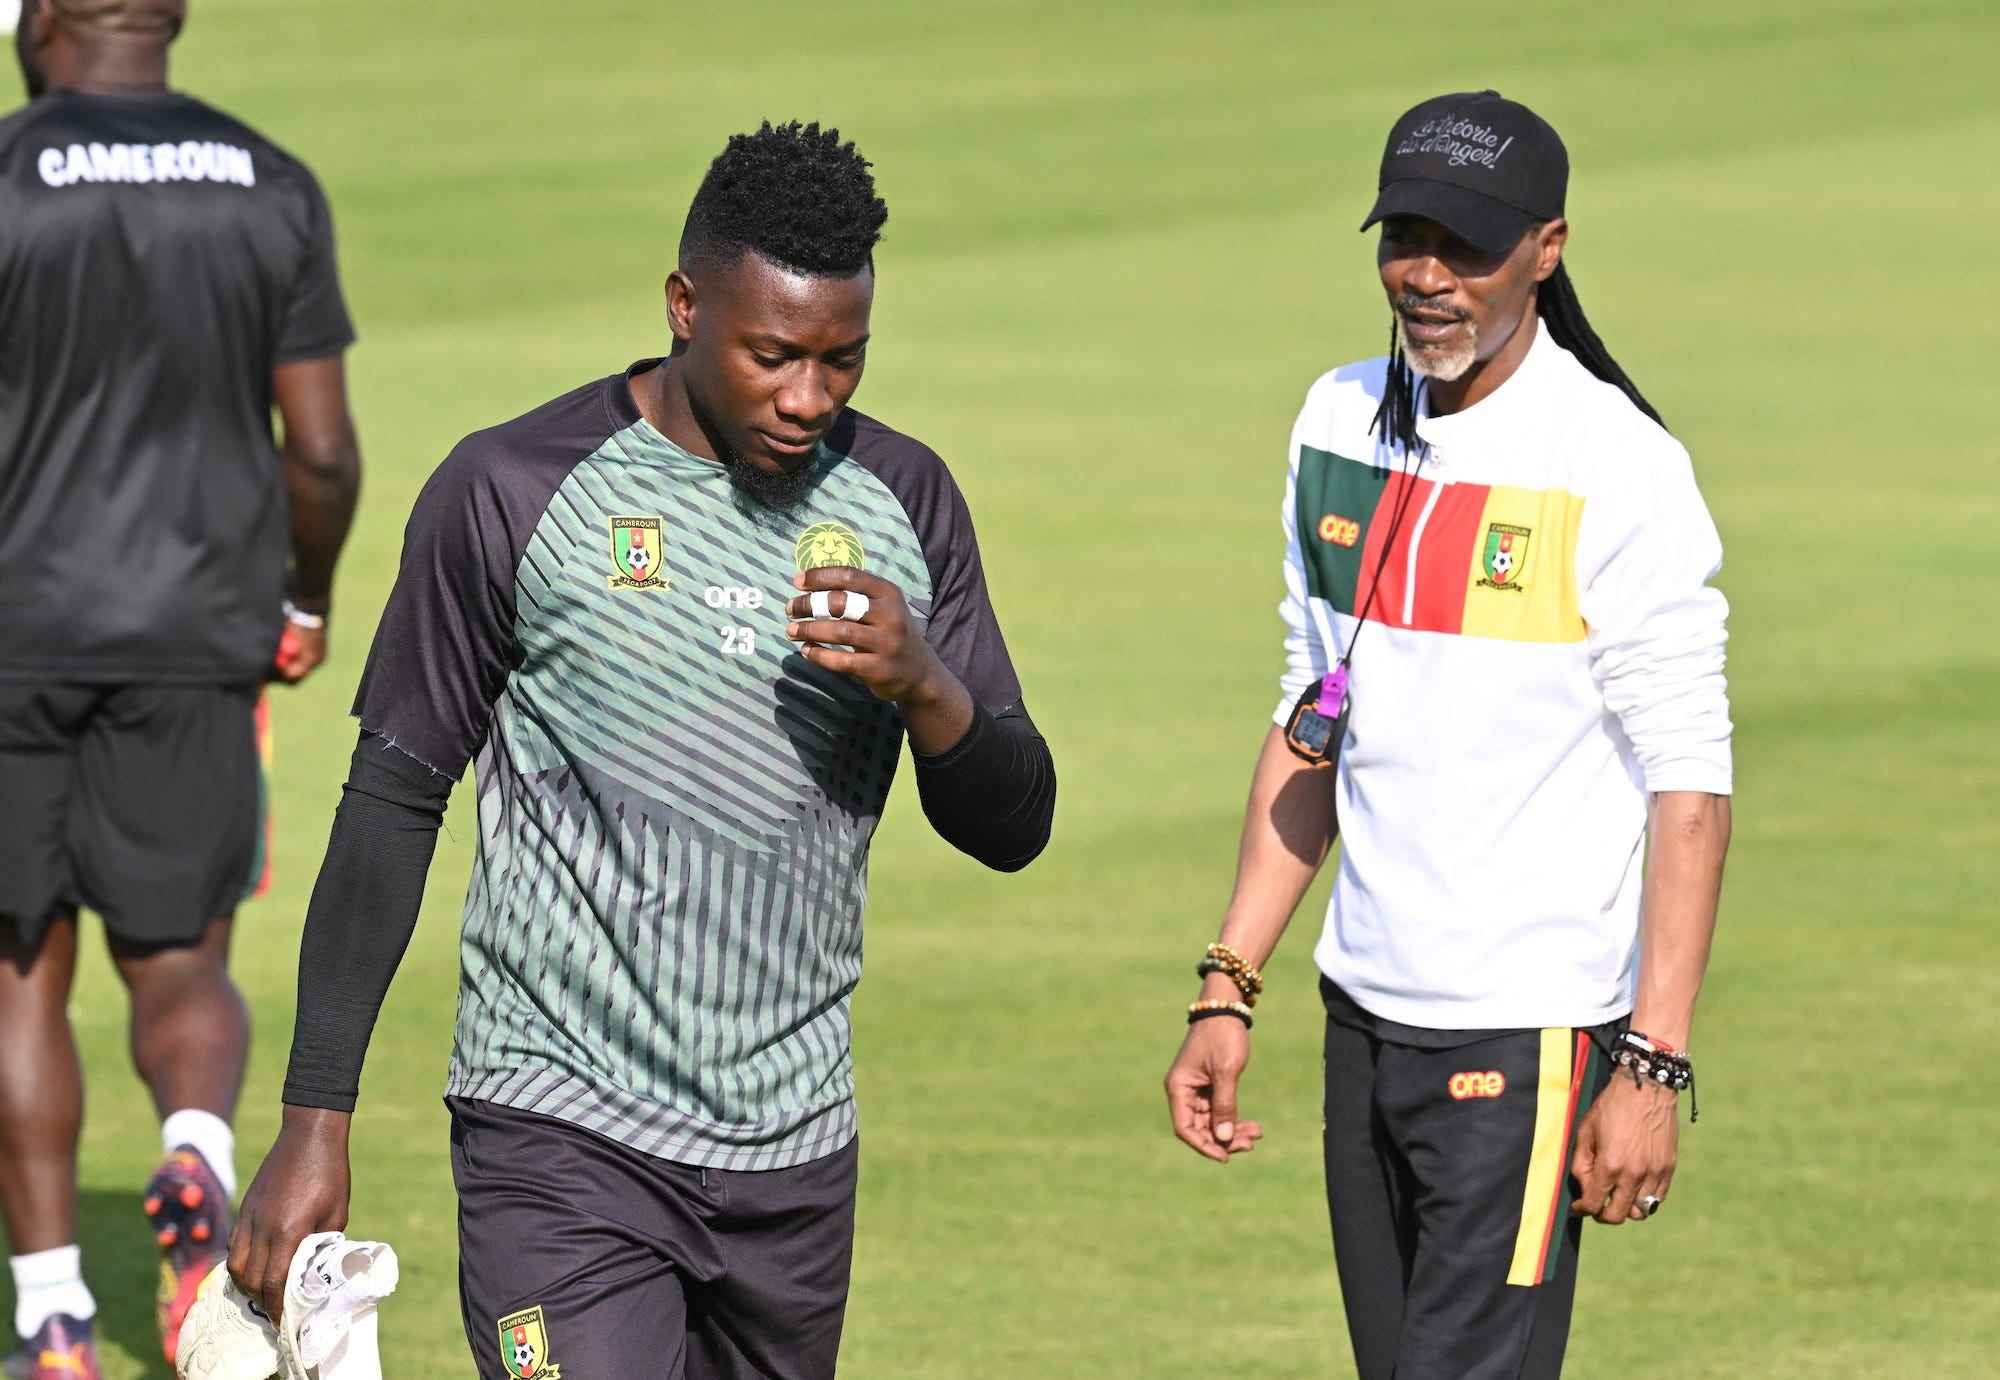 Kameruns Cheftrainer Rigobert Song (R) überwacht eine Trainingseinheit seiner Spieler, darunter Kameruns Torwart Andre Onana, am 27. November 2022 im Al Sailiya SC in Doha am Vorabend eines Fußballspiels der Fußballweltmeisterschaft 2022 in Katar zwischen Kamerun und Serbien.